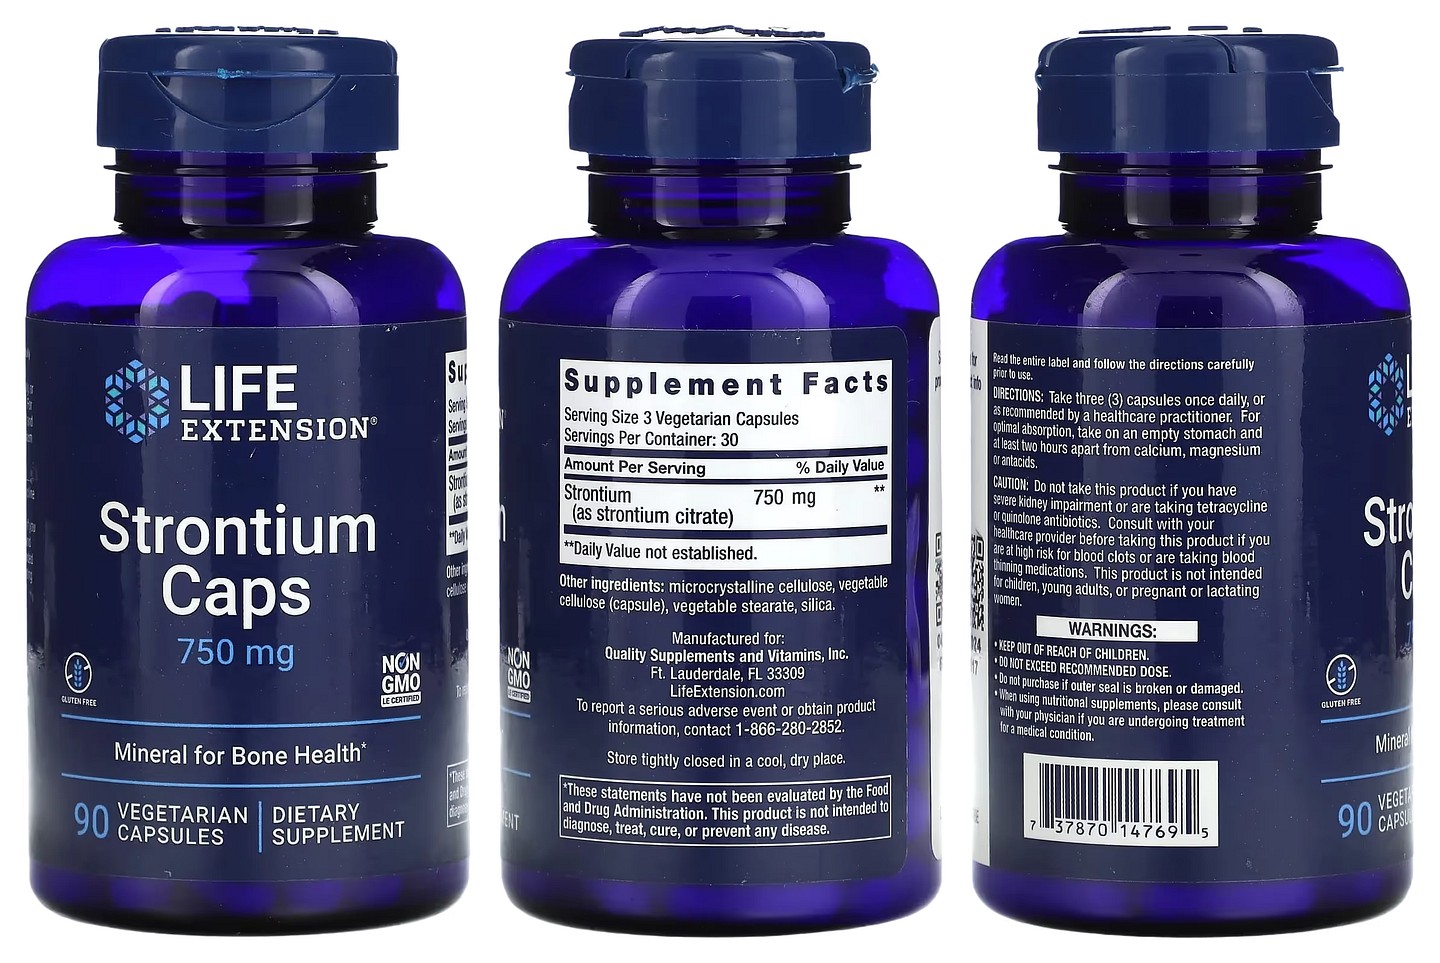 Life Extension, Strontium Caps packaging